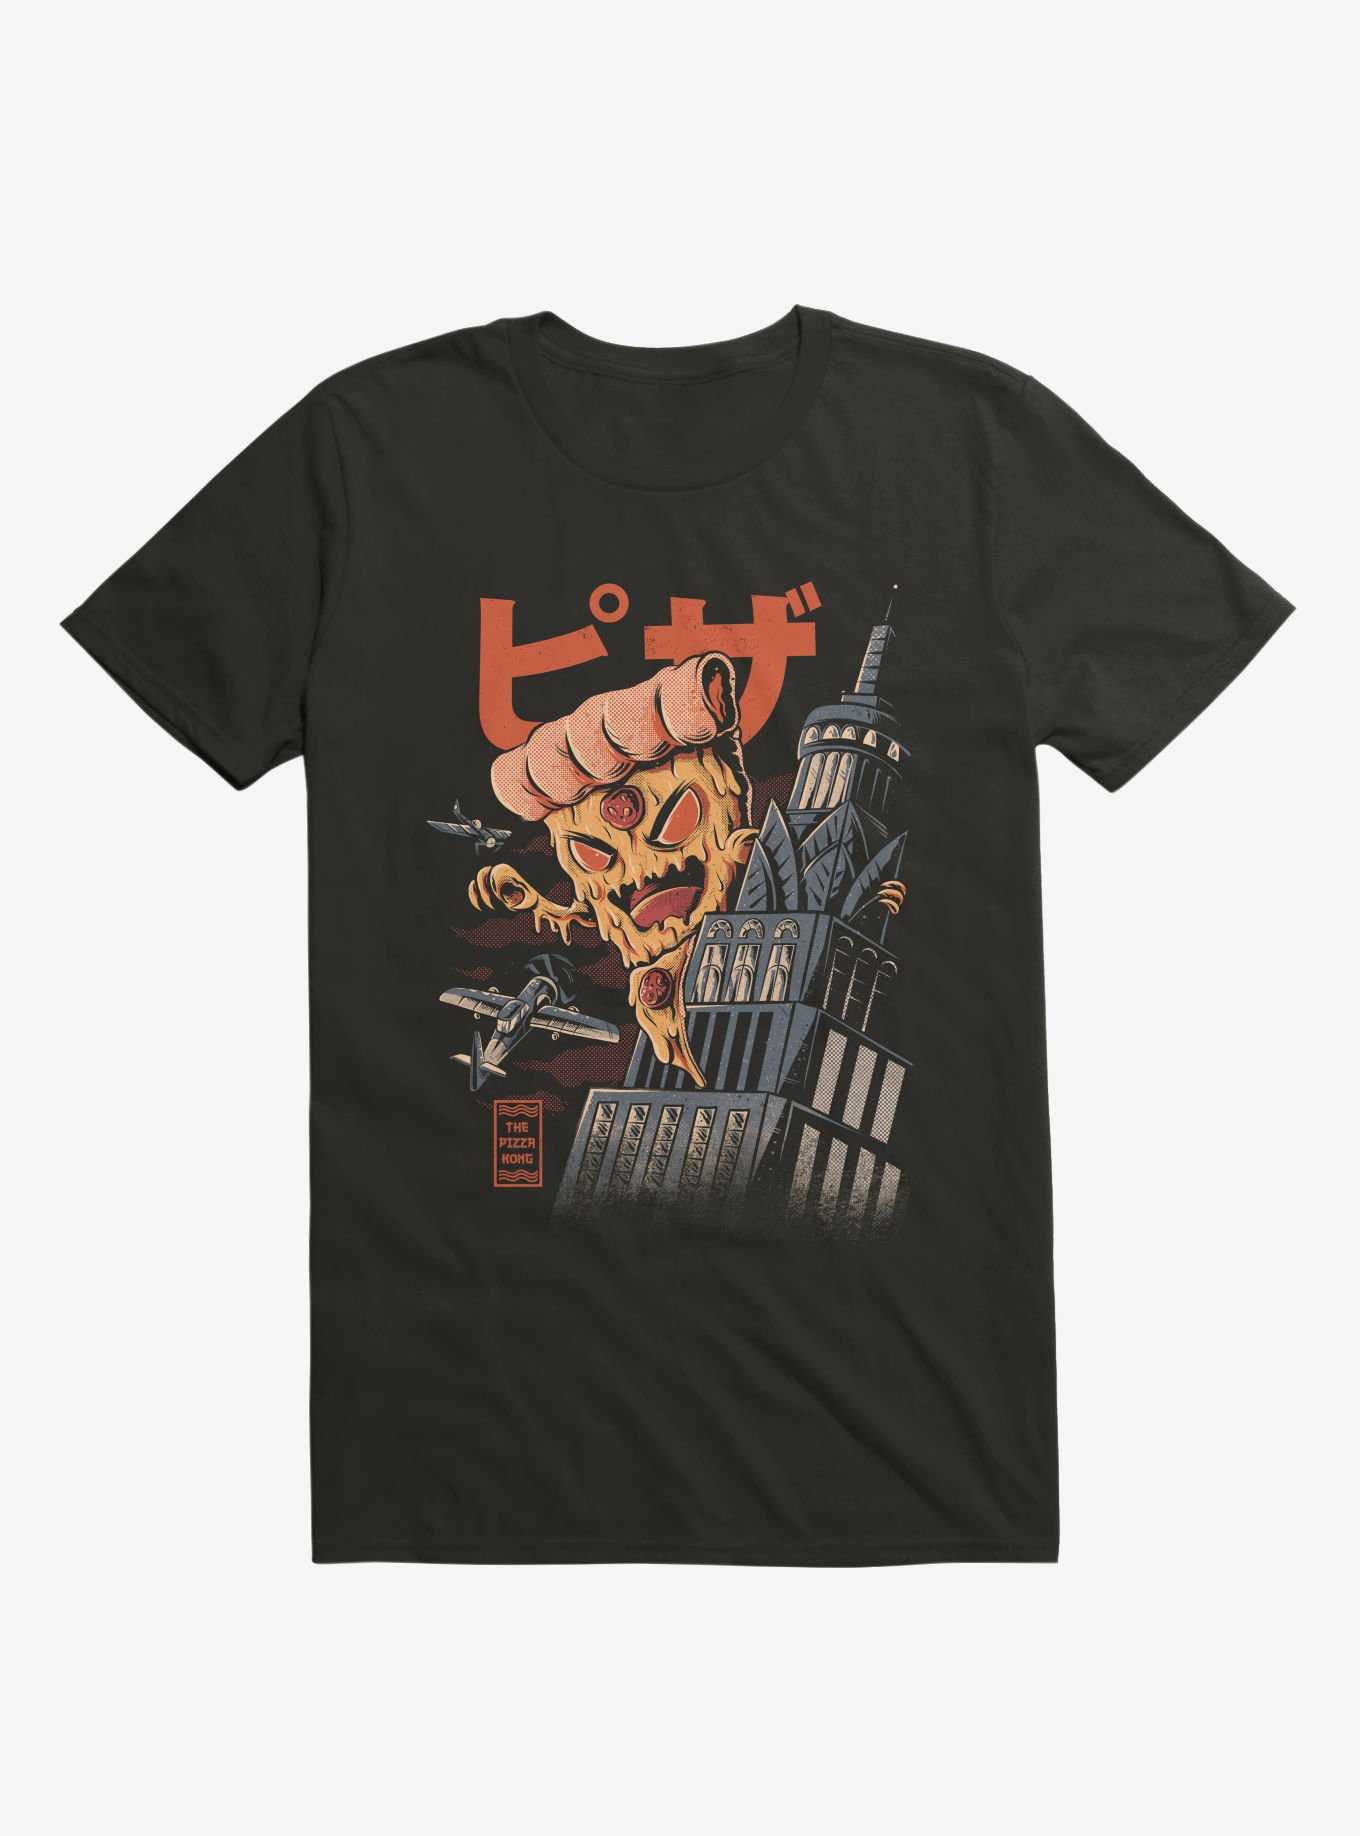 Pizza Kong Attack Black T-Shirt, , hi-res